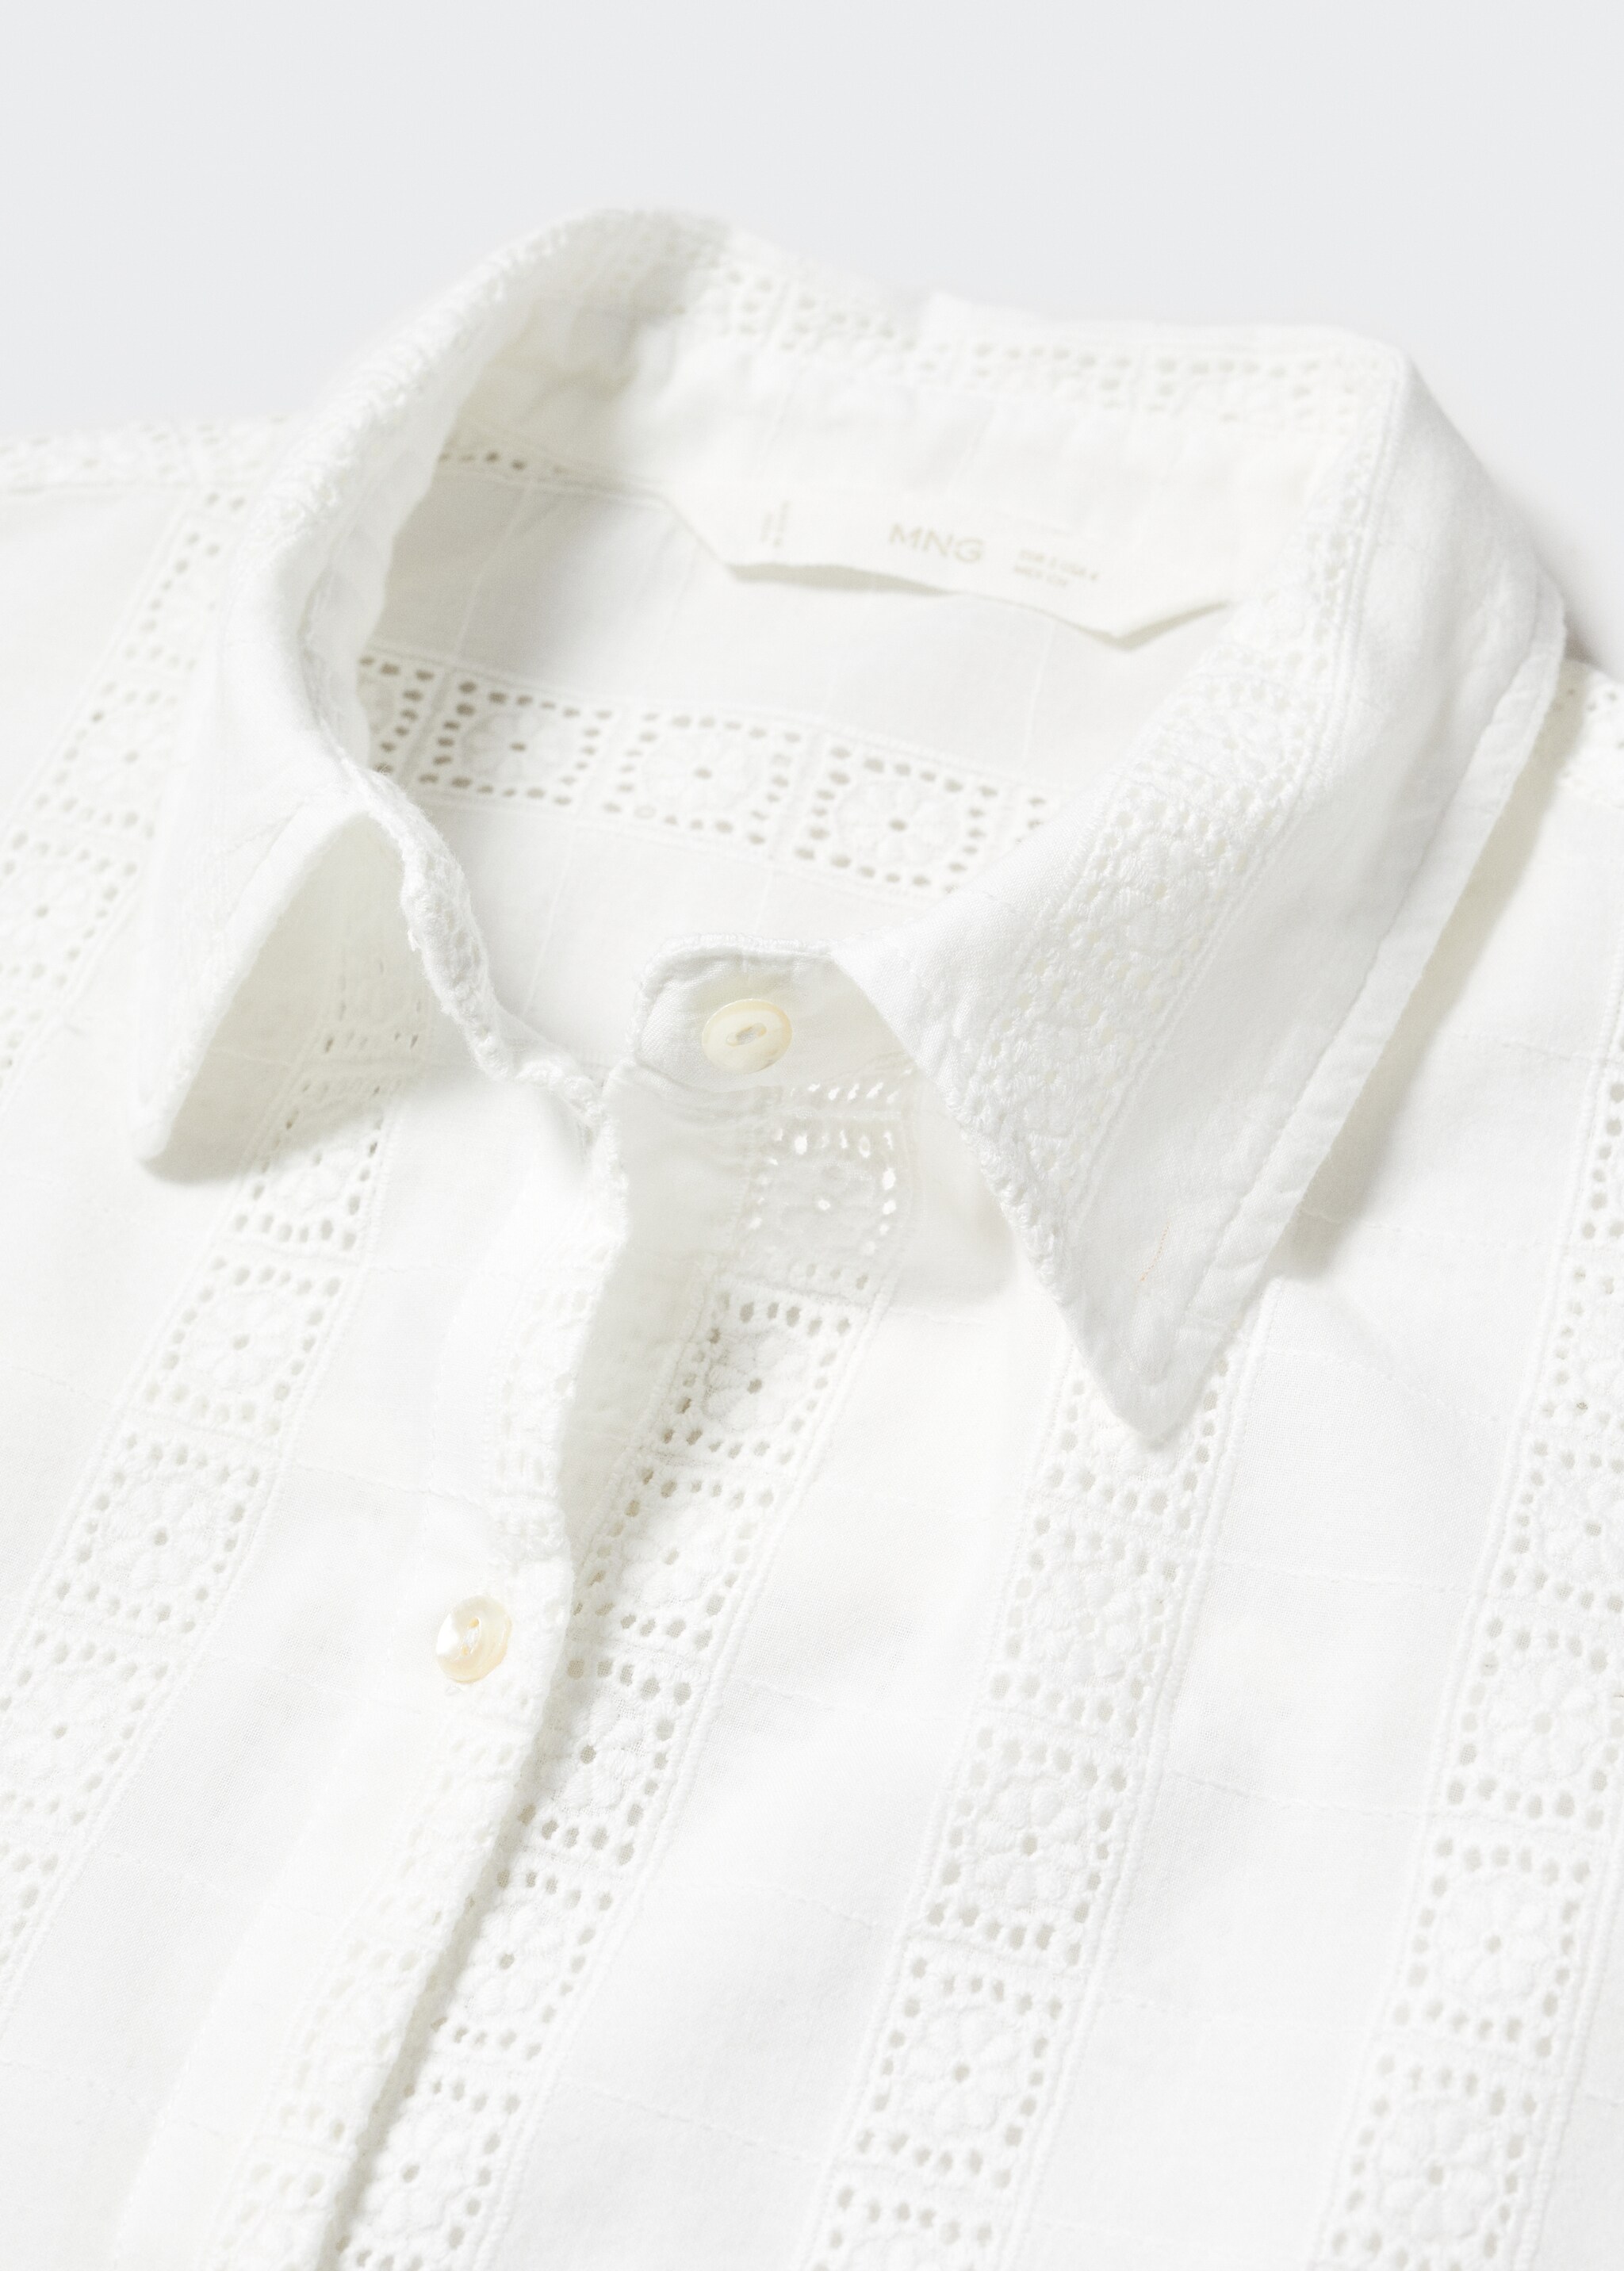 Camisa algodón bordada - Detalle del artículo 8